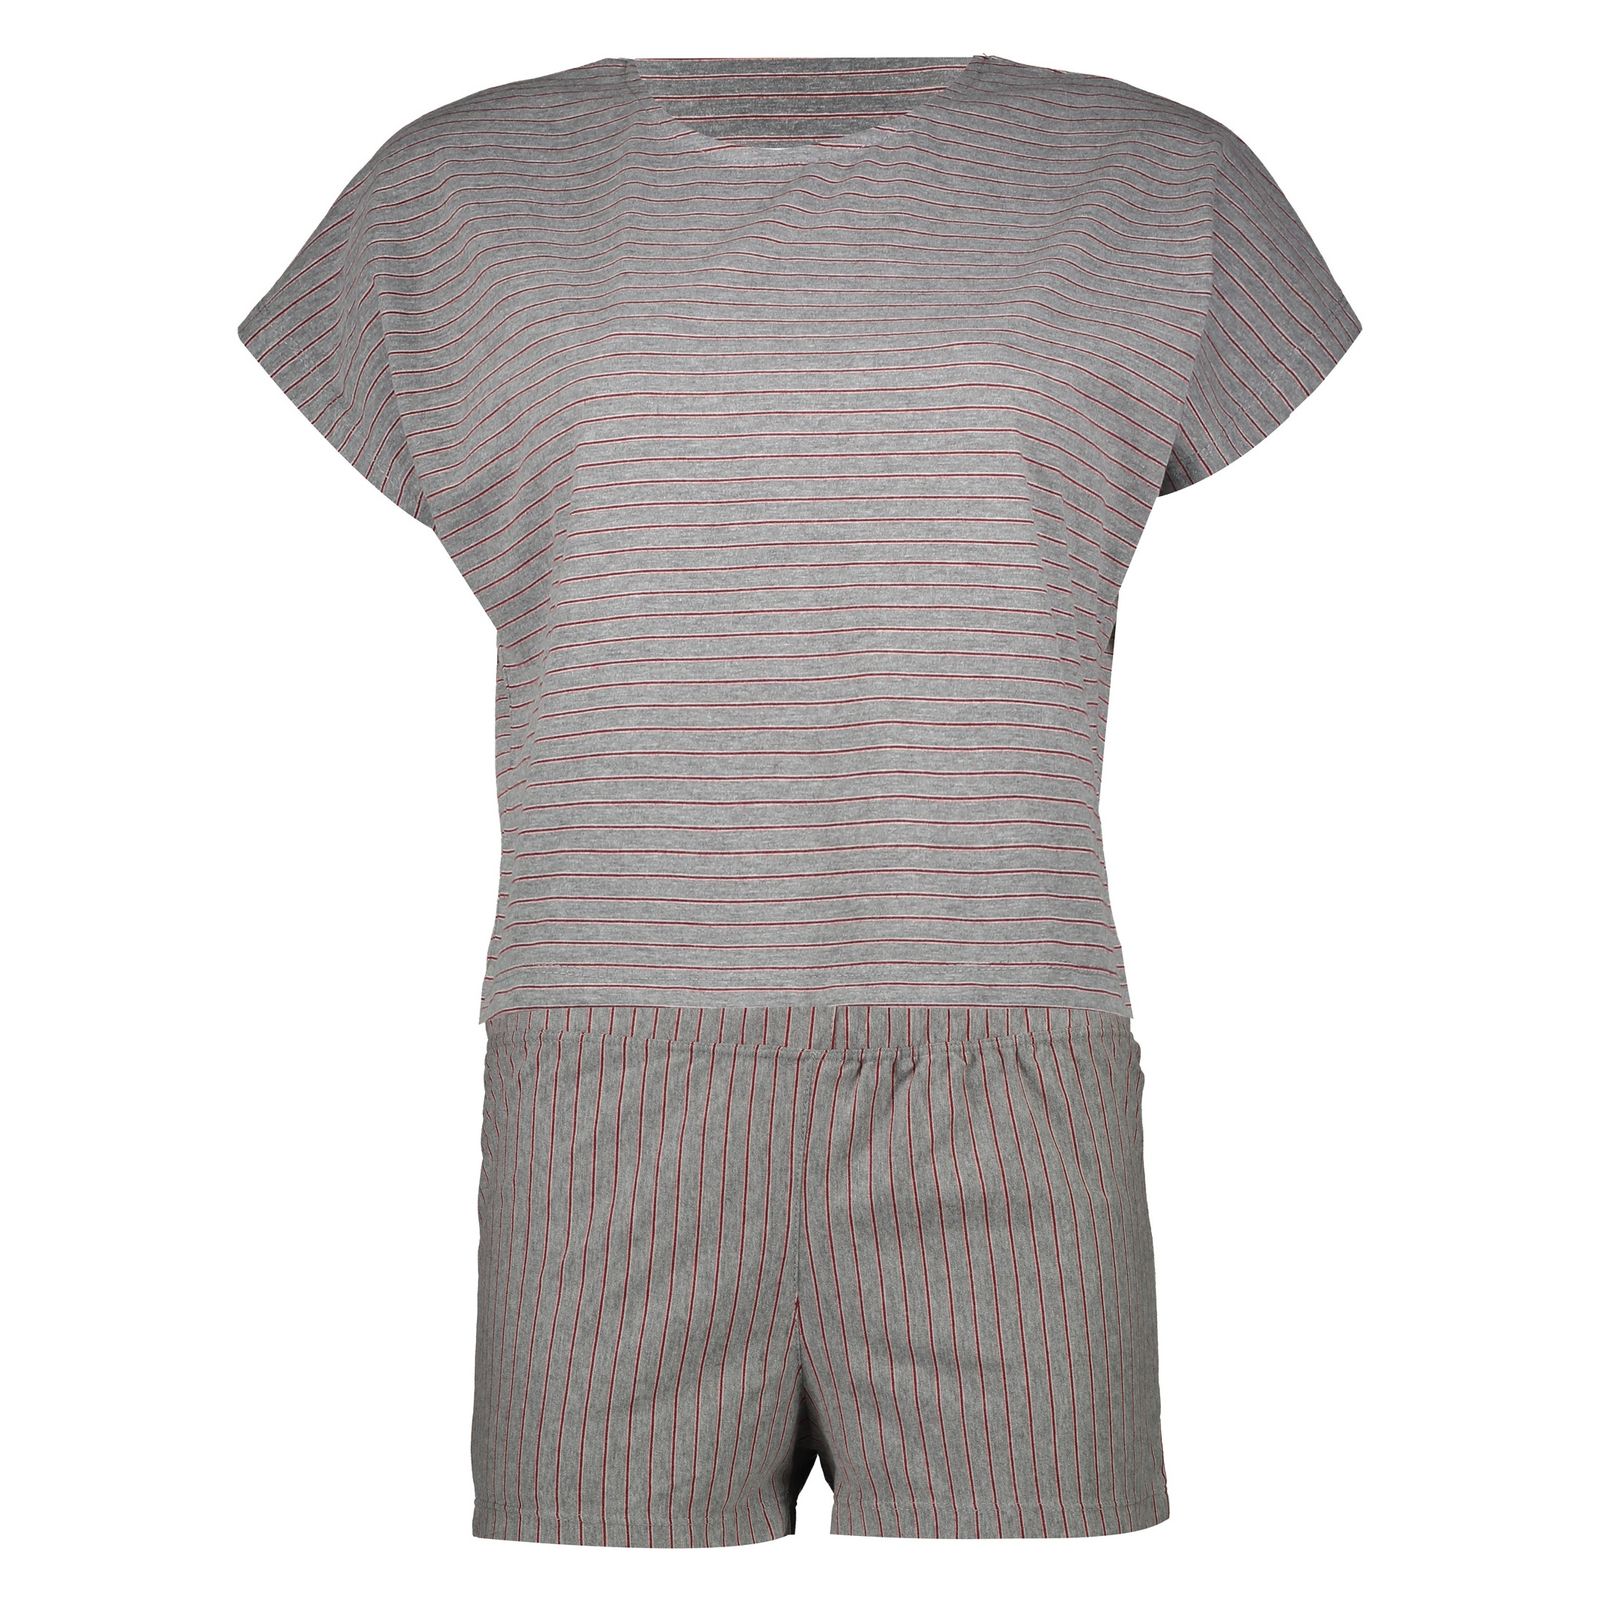 ست تی شرت و شلوارک زنانه گارودی مدل 1003214011-88 -  - 6